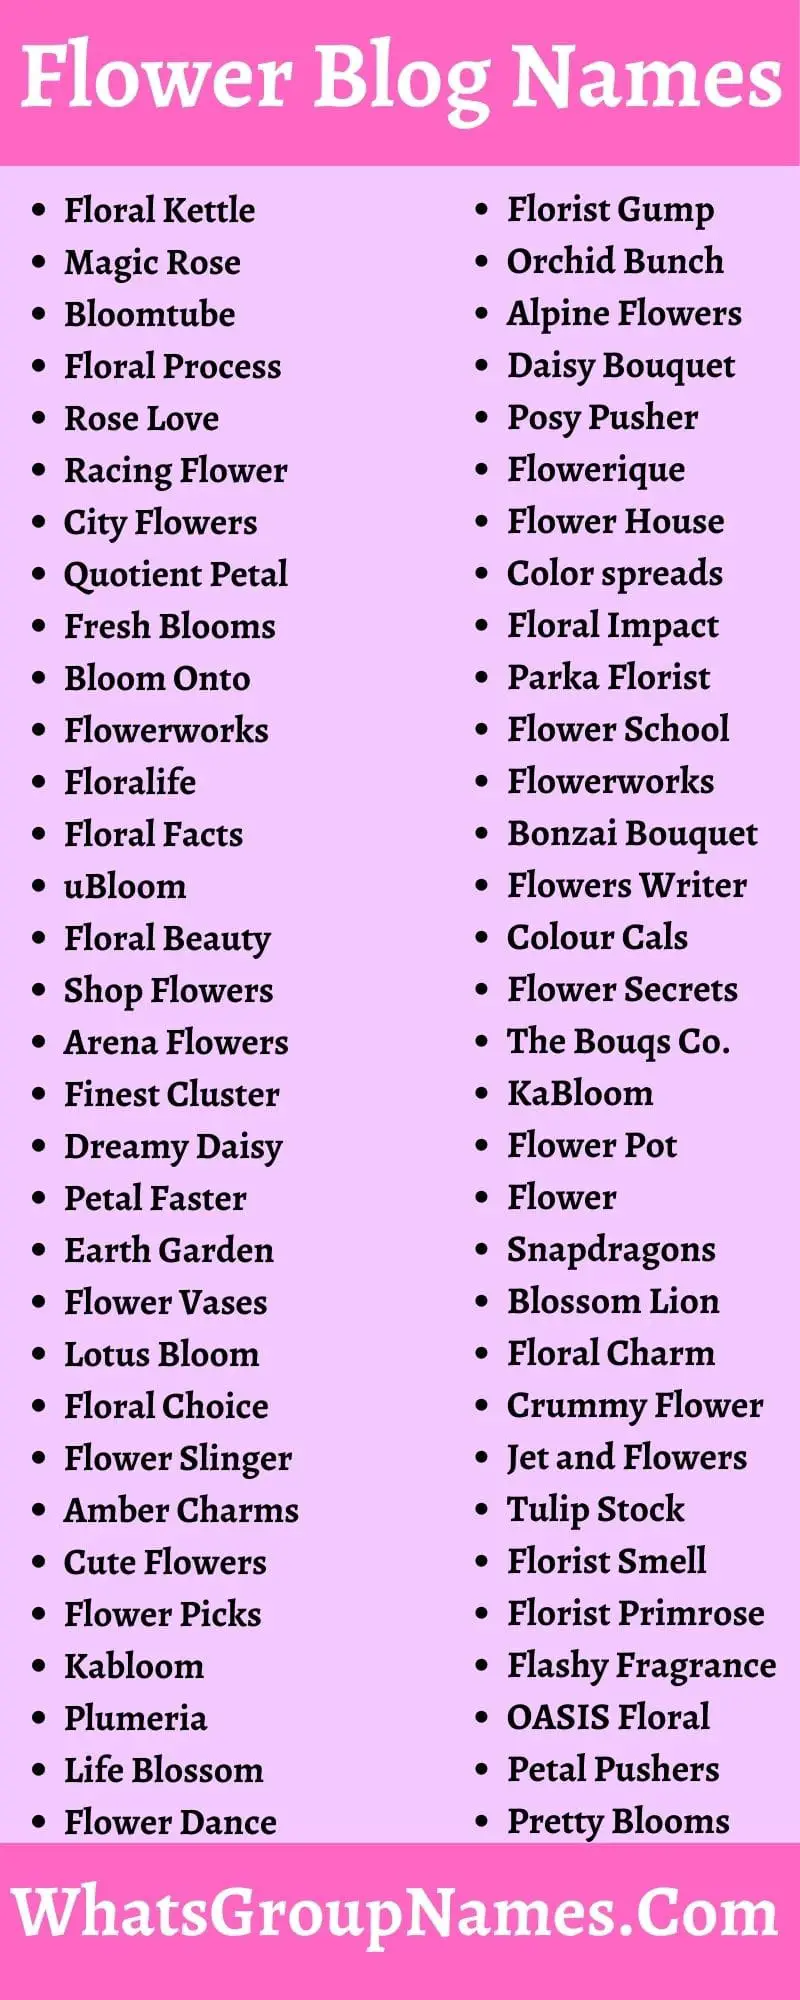 Flower Blog Names